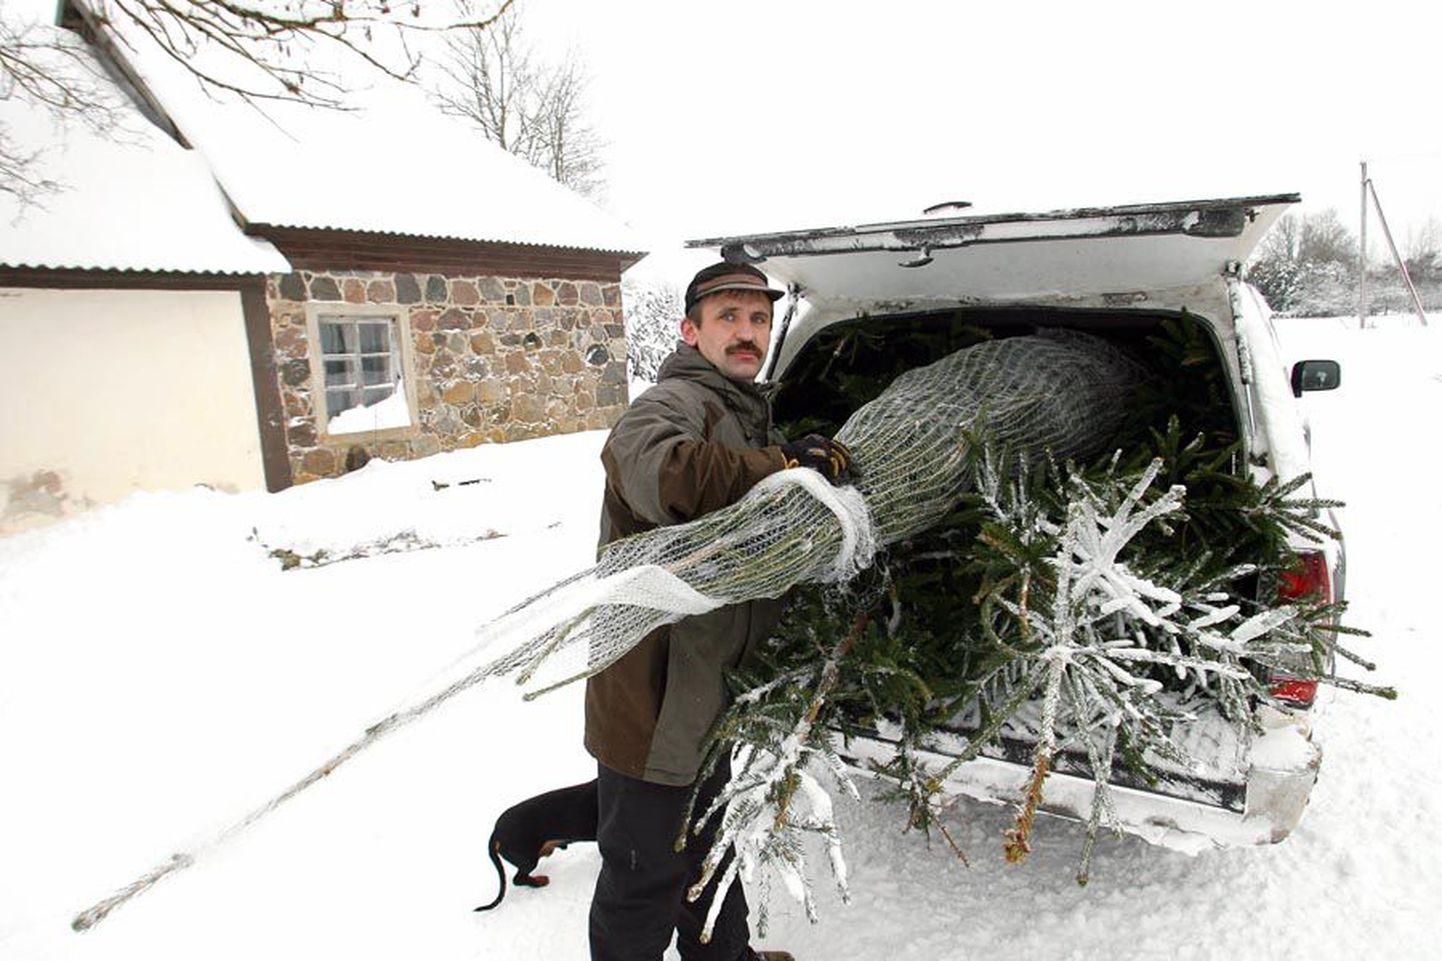 Aimla metsandiku metsnik Urmas Murumägi mahutas esimese korraga autosse kolm kuuske, nii et tal tuli jõulupuude laialivedamiseks teha kaks tiiru.